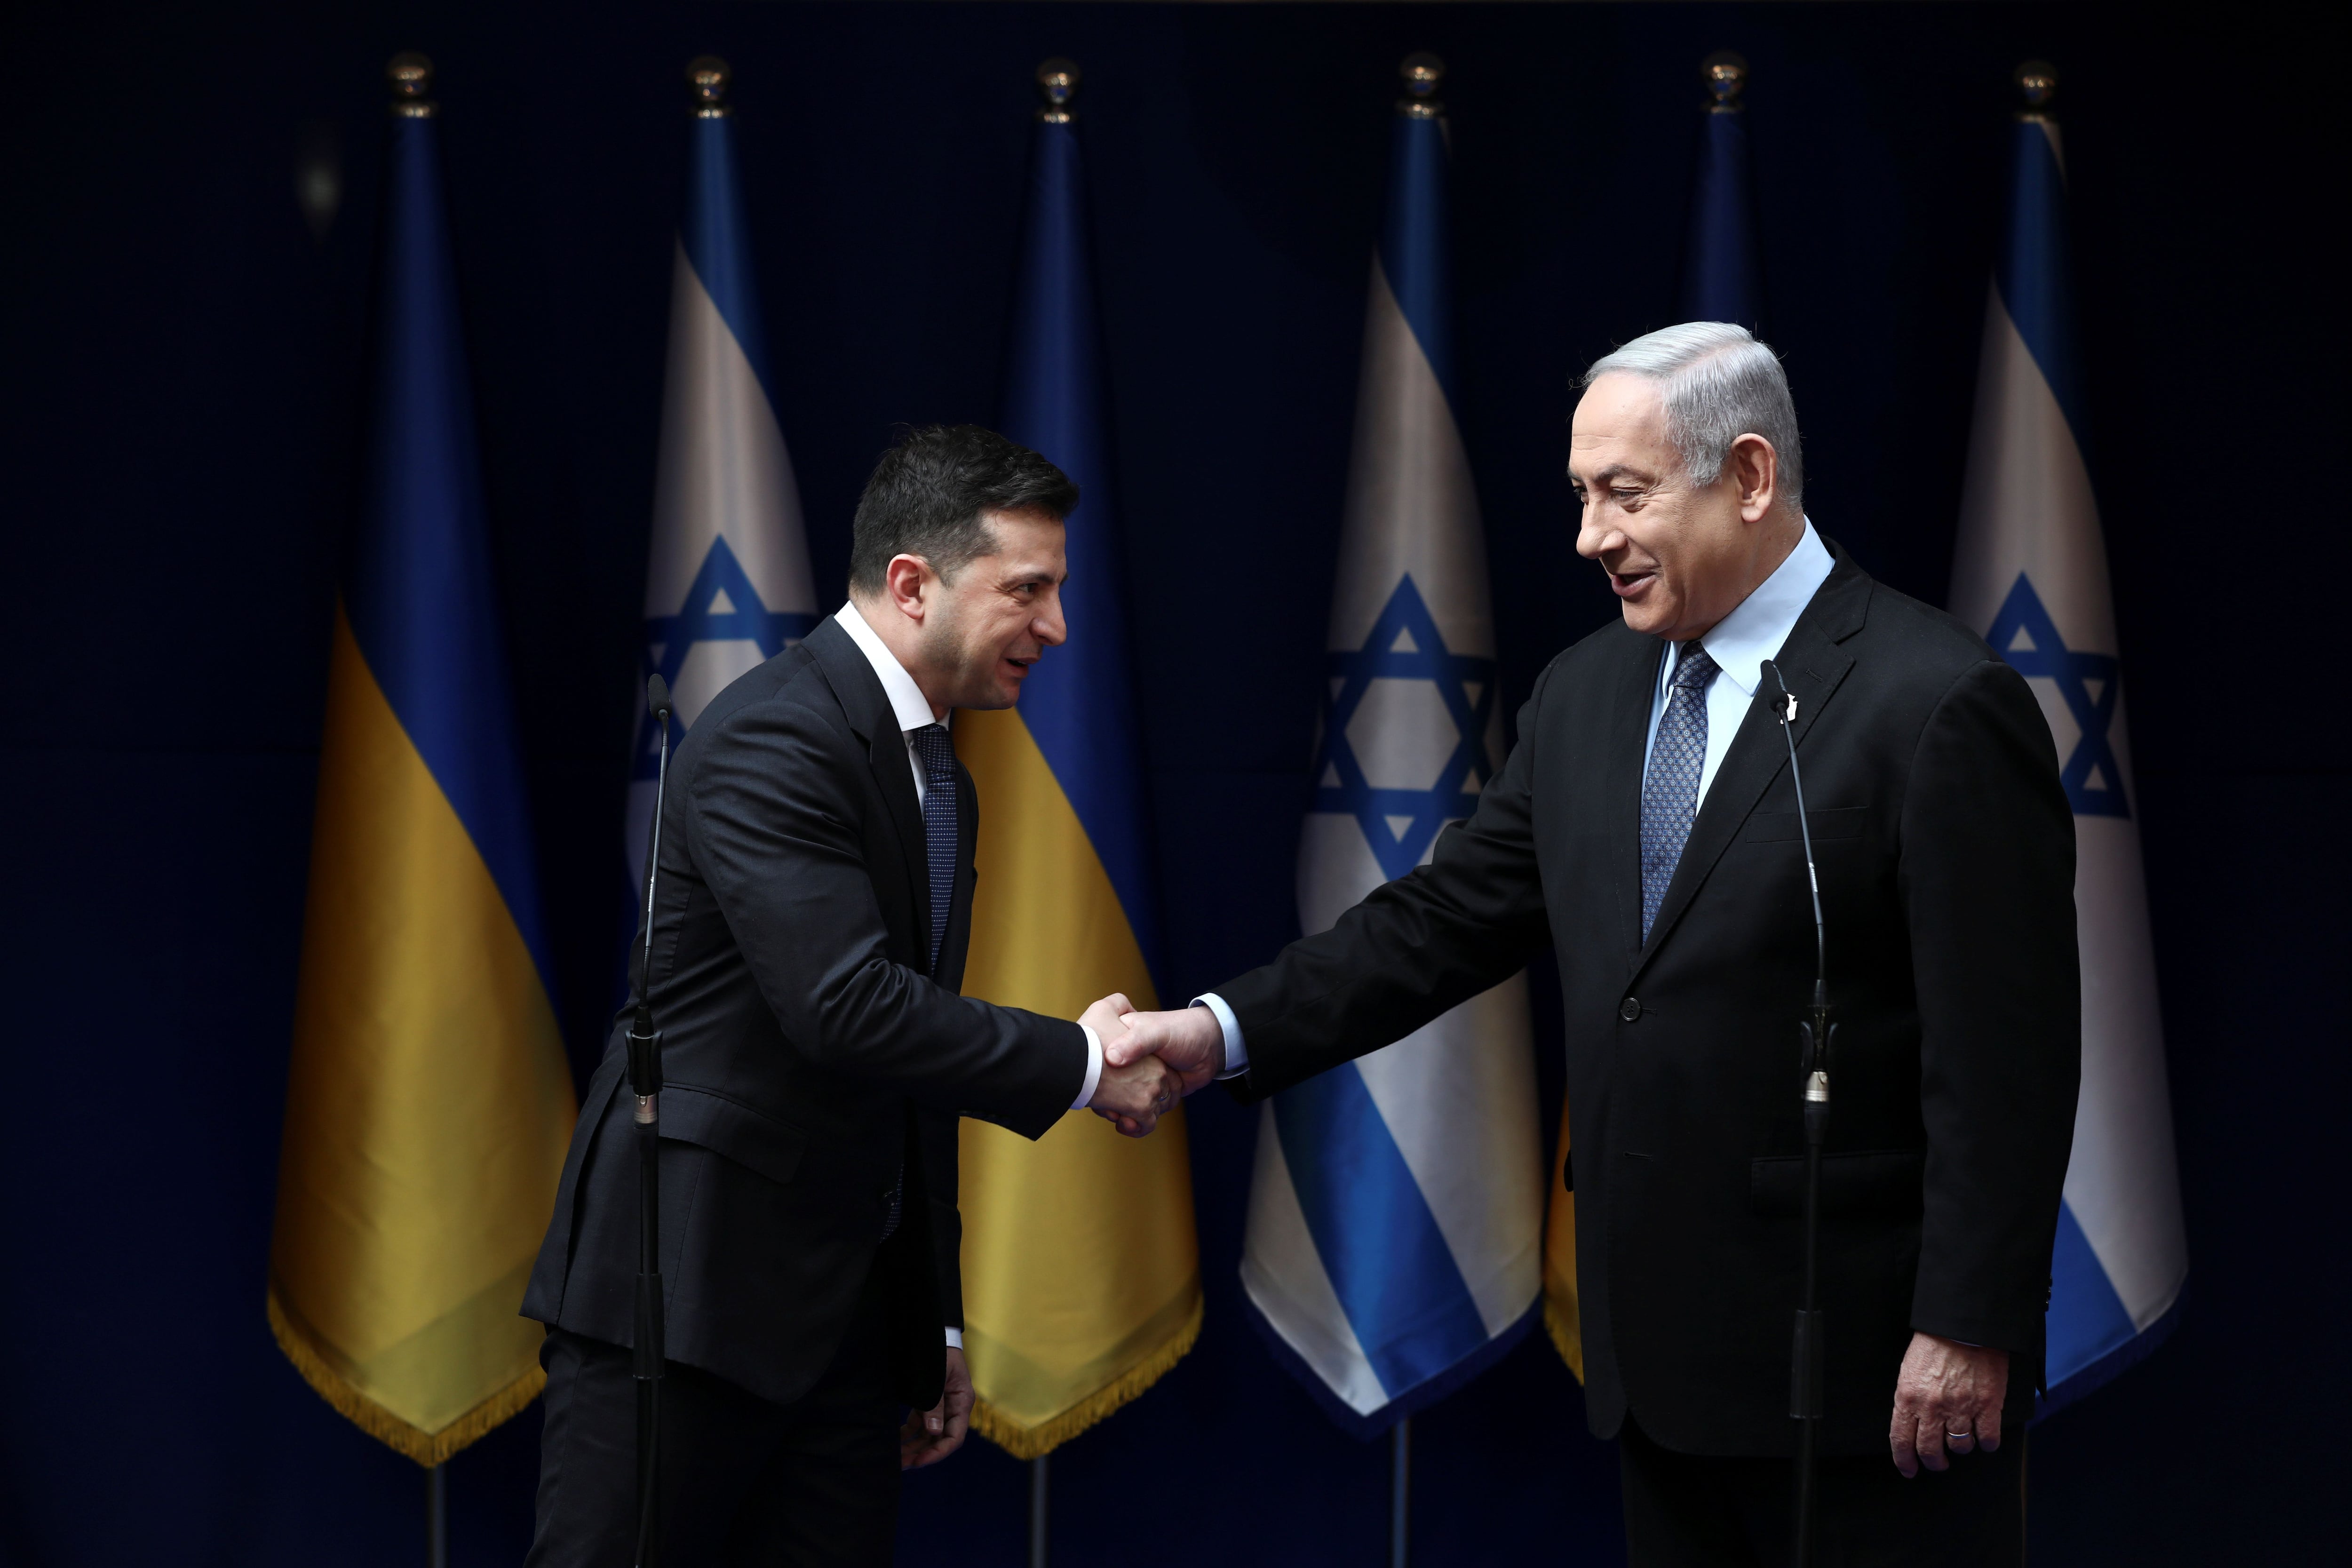 El primer ministro israelí, Benjamin Netanyahu, y el presidente ucraniano, Volodimir Zelensky, se dan la mano durante su reunión en Jerusalén, el 24 de enero de 2020. Oded Balilty/Pool vía REUTERS/Archivo
